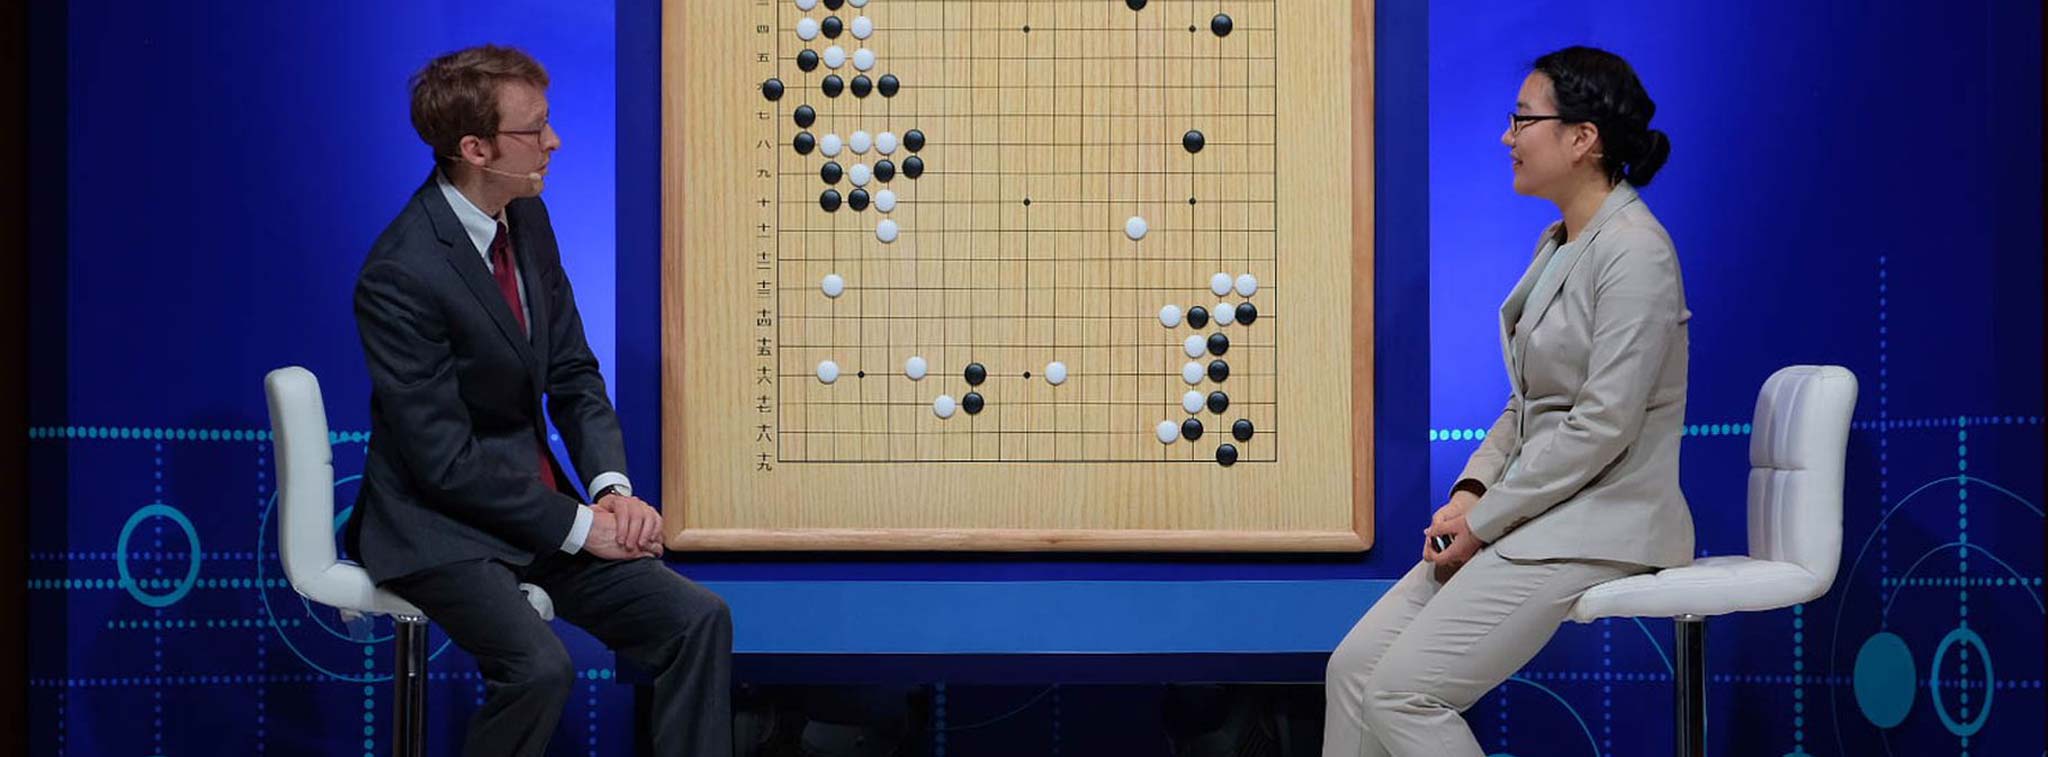 Trí thông minh nhân tạo AlphaGo của Google đánh bại kỳ thủ cờ vây số 1 thế giới trong trận đầu tiên